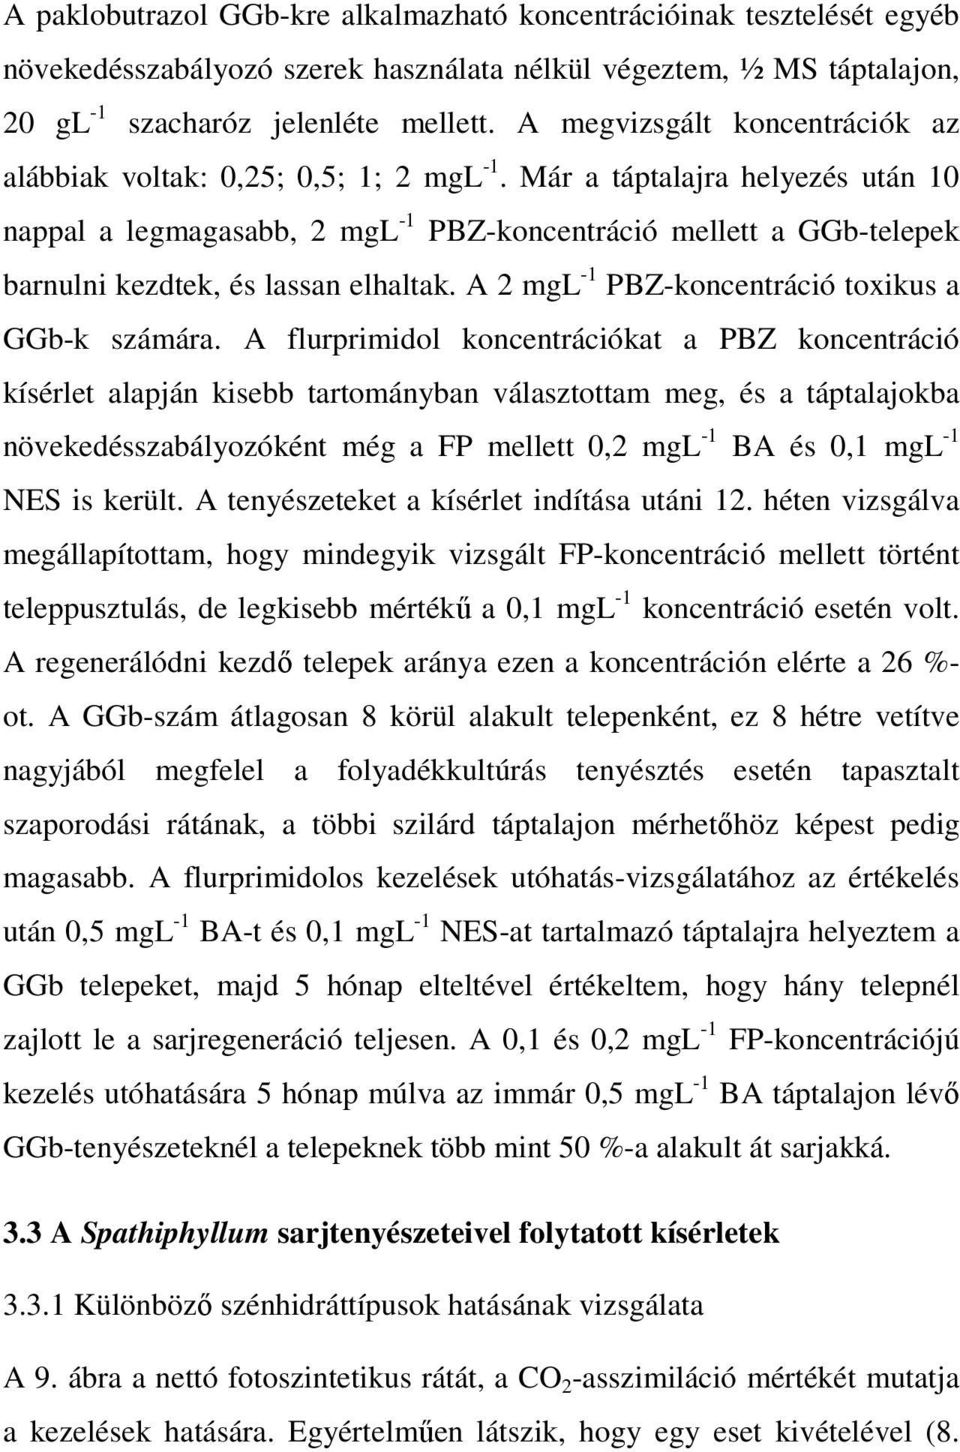 Már a táptalajra helyezés után 10 nappal a legmagasabb, 2 mgl -1 PBZ-koncentráció mellett a GGb-telepek barnulni kezdtek, és lassan elhaltak. A 2 mgl -1 PBZ-koncentráció toxikus a GGb-k számára.